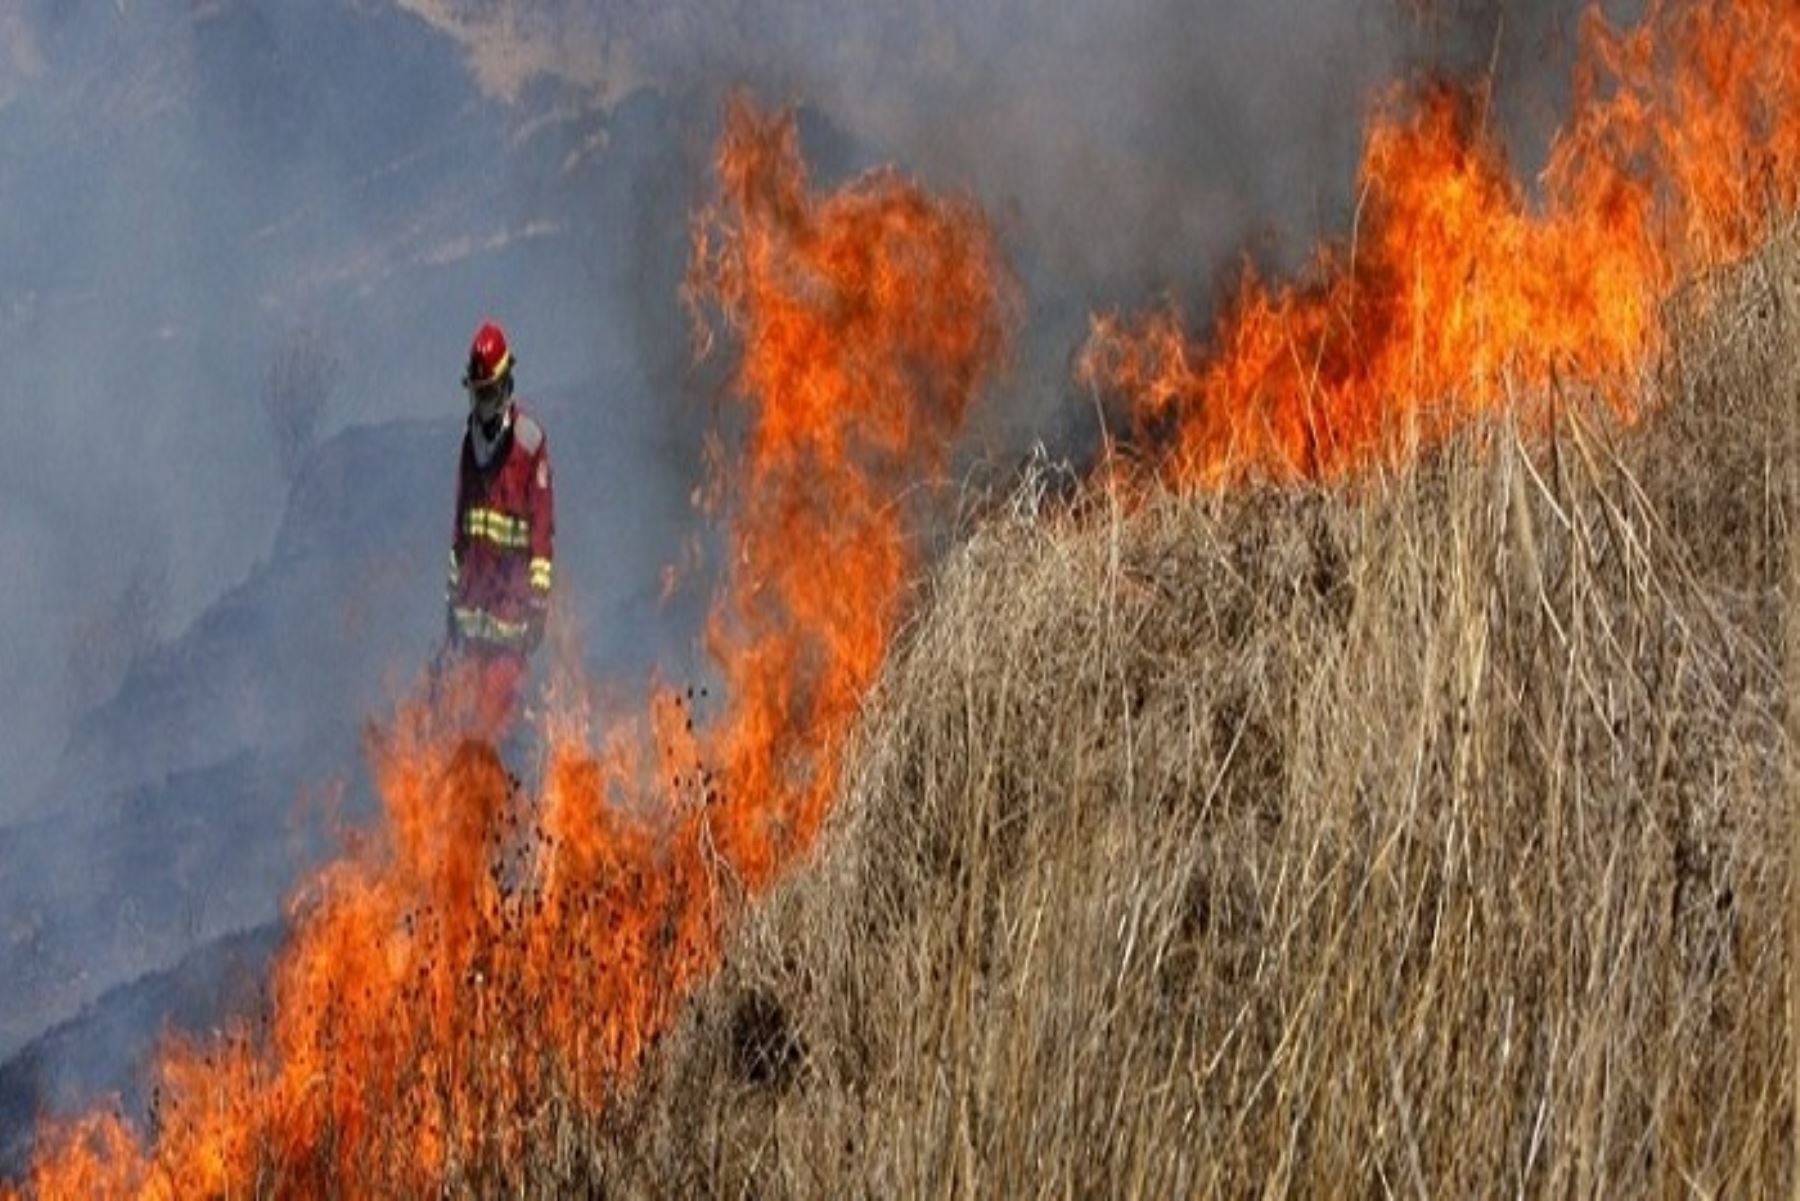 El Instituto Nacional de Defensa Civil (Indeci) confirmó que hasta el momento durante el año 2018 se han registrado 38 incendios forestales en diversas regiones del país como Arequipa, Pasco, Amazonas, Lambayeque y Puno, entre otras.